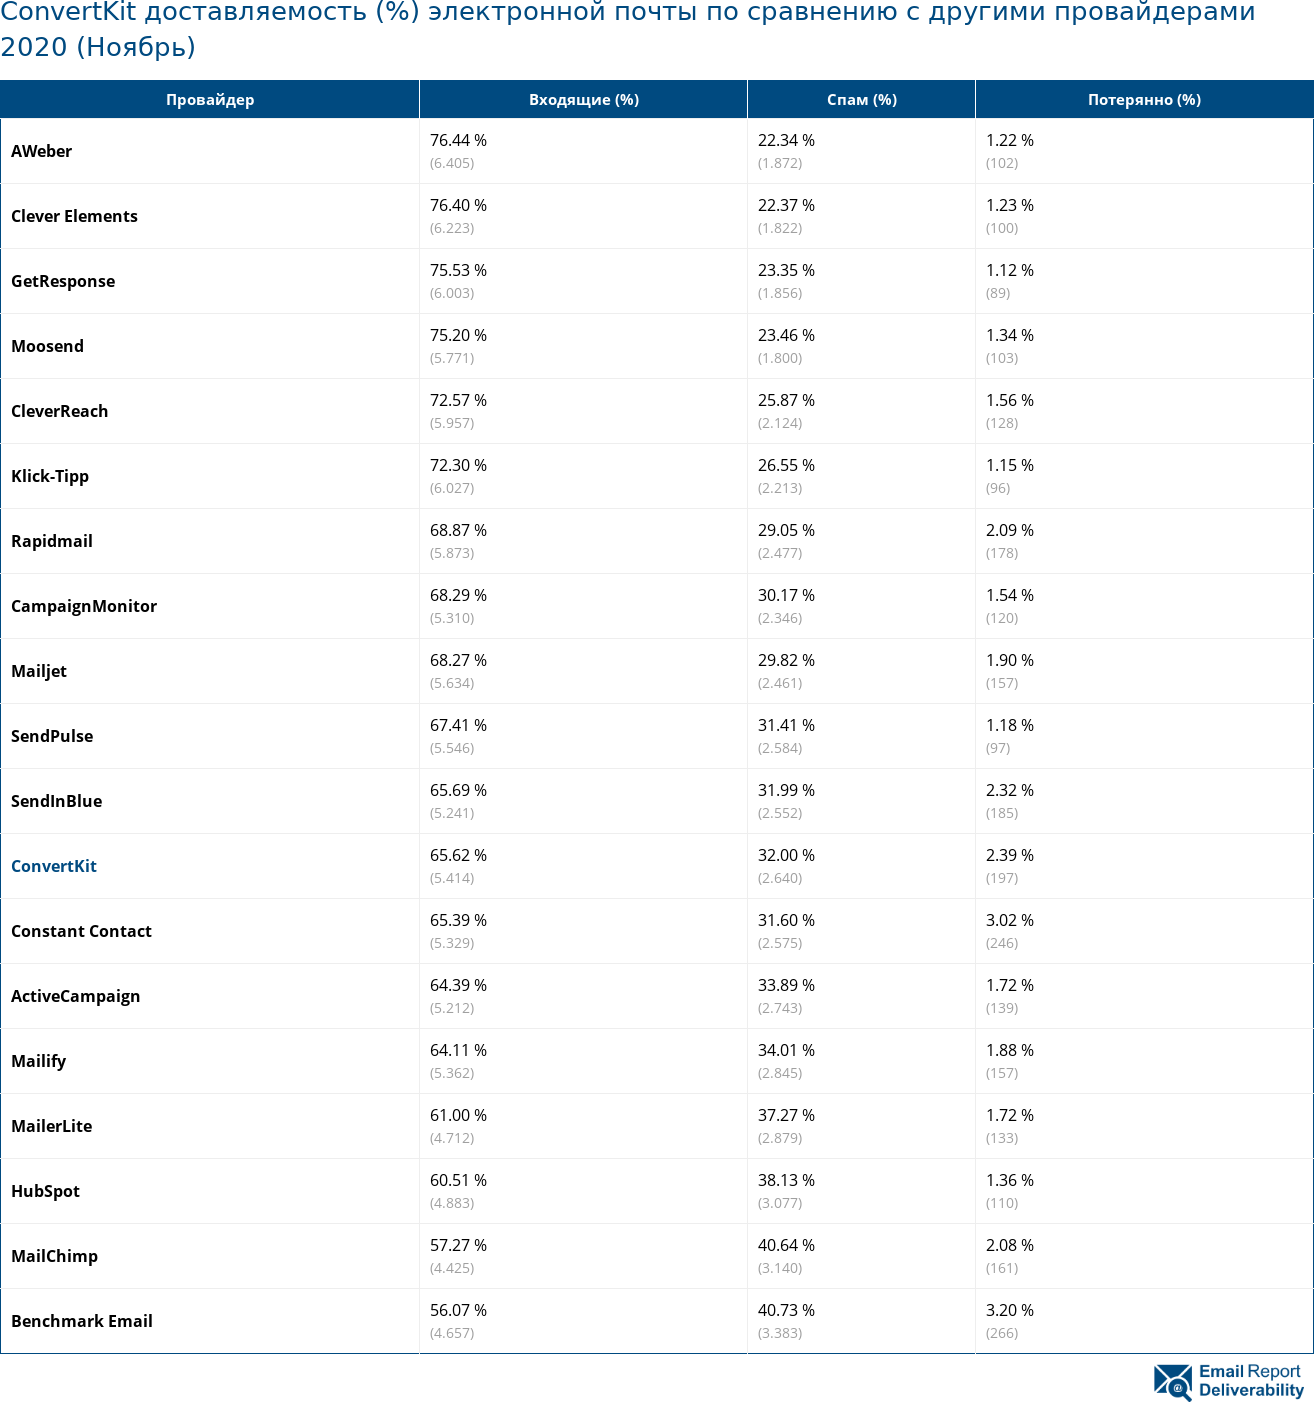 ConvertKit доставляемость (%) электронной почты по сравнению с другими провайдерами 2020 (Ноябрь)